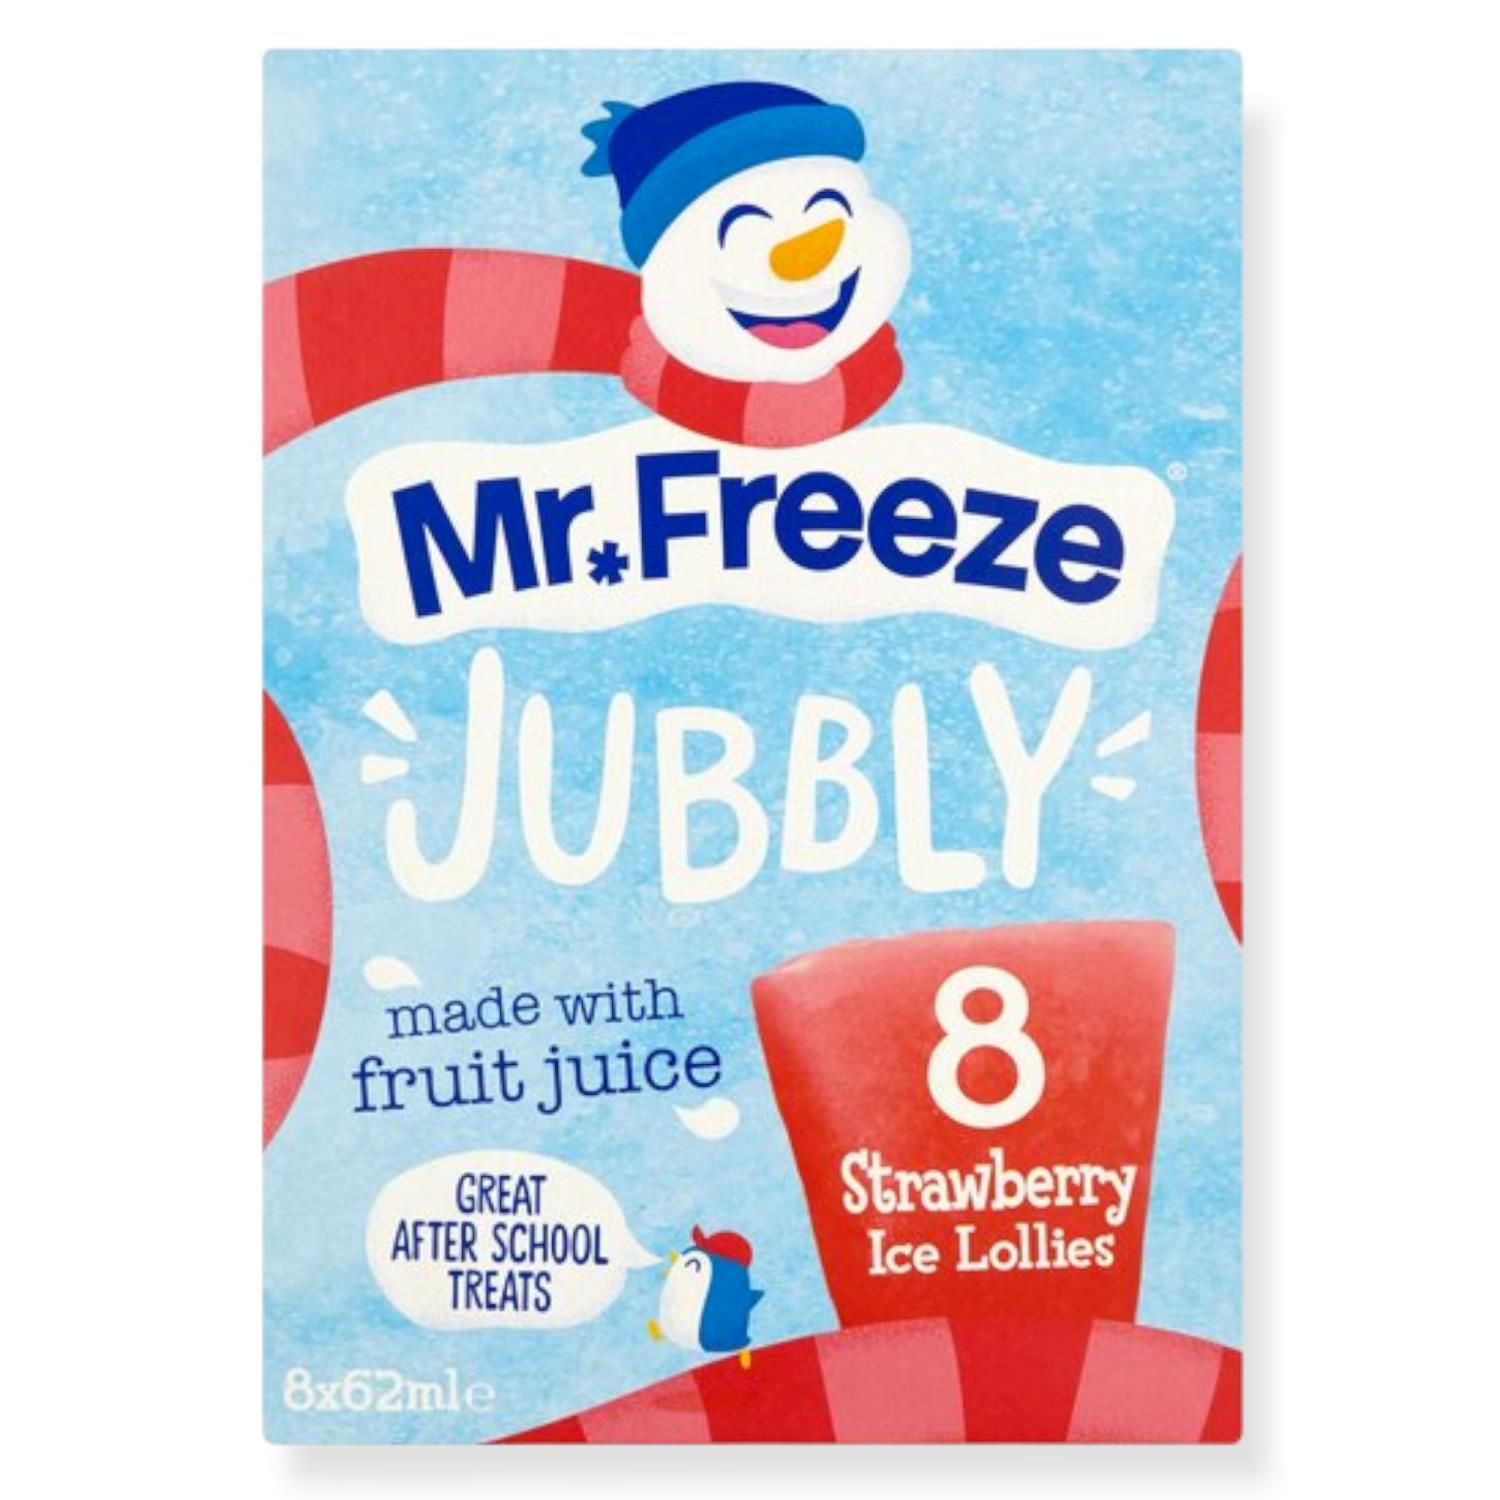 Mr.Freeze Jubbly Strawberry Ice Lollies 8pk